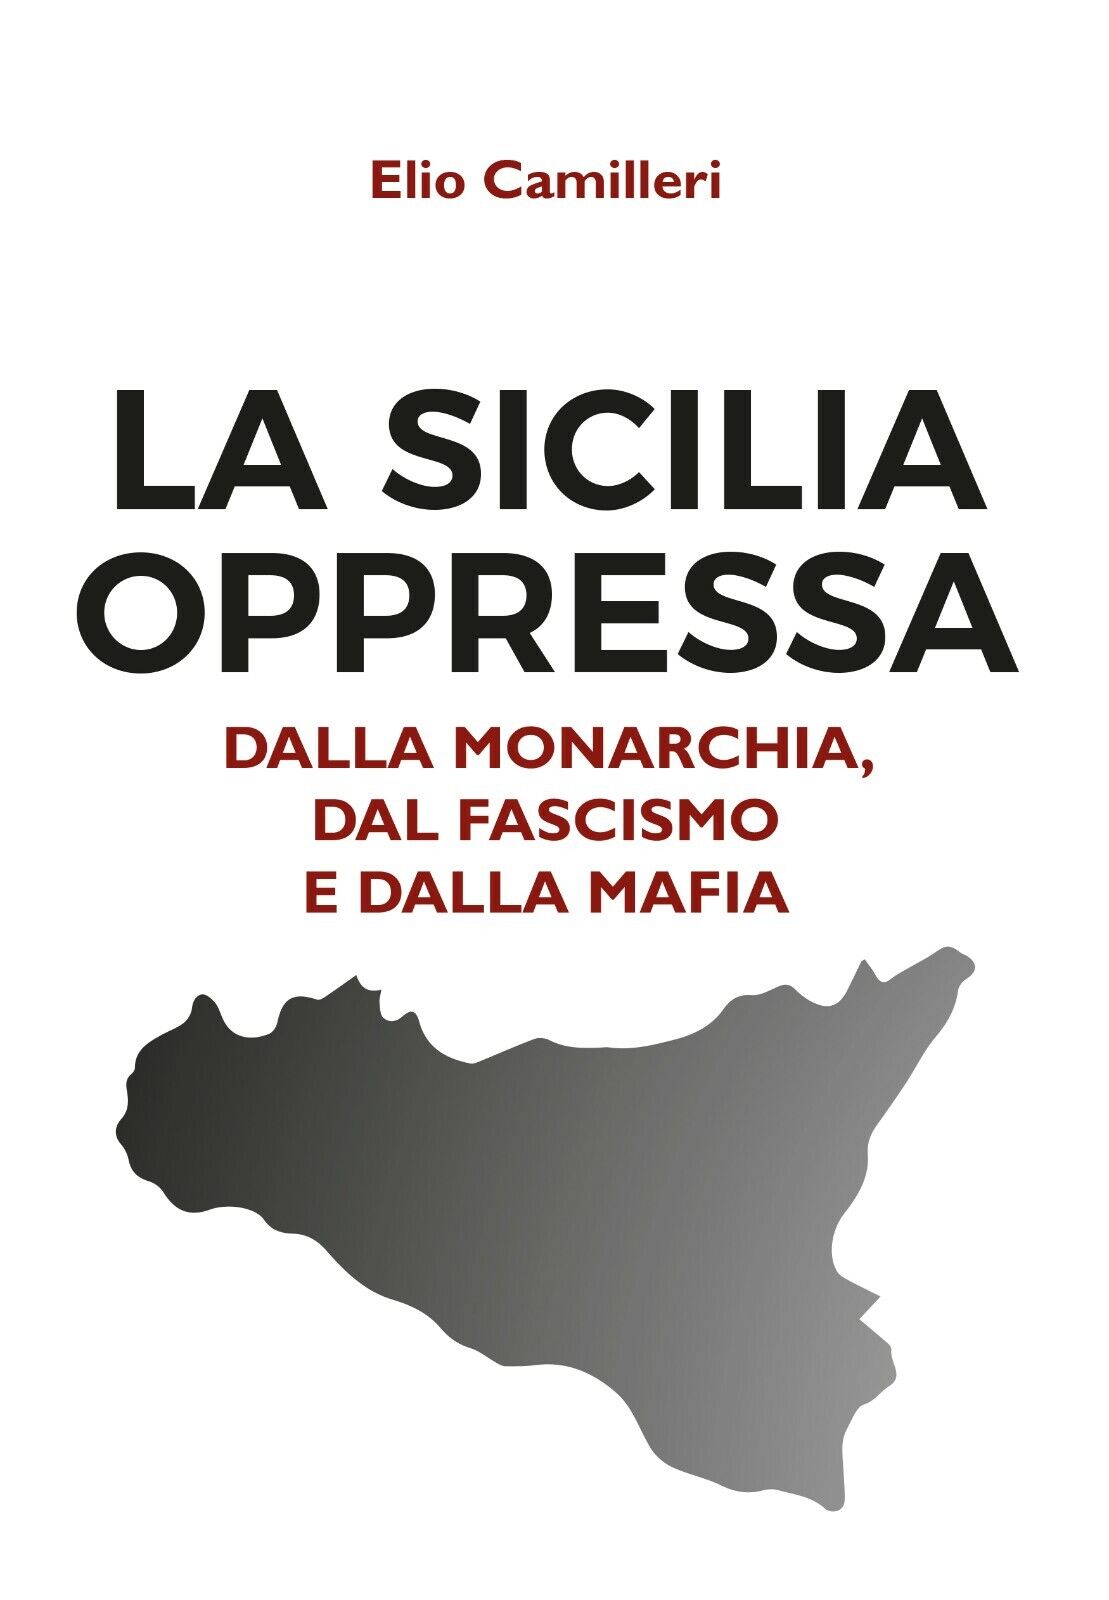 La Sicilia oppressa dalla monarchia, dal fascismo e dalla mafia-Elio Camilleri-P